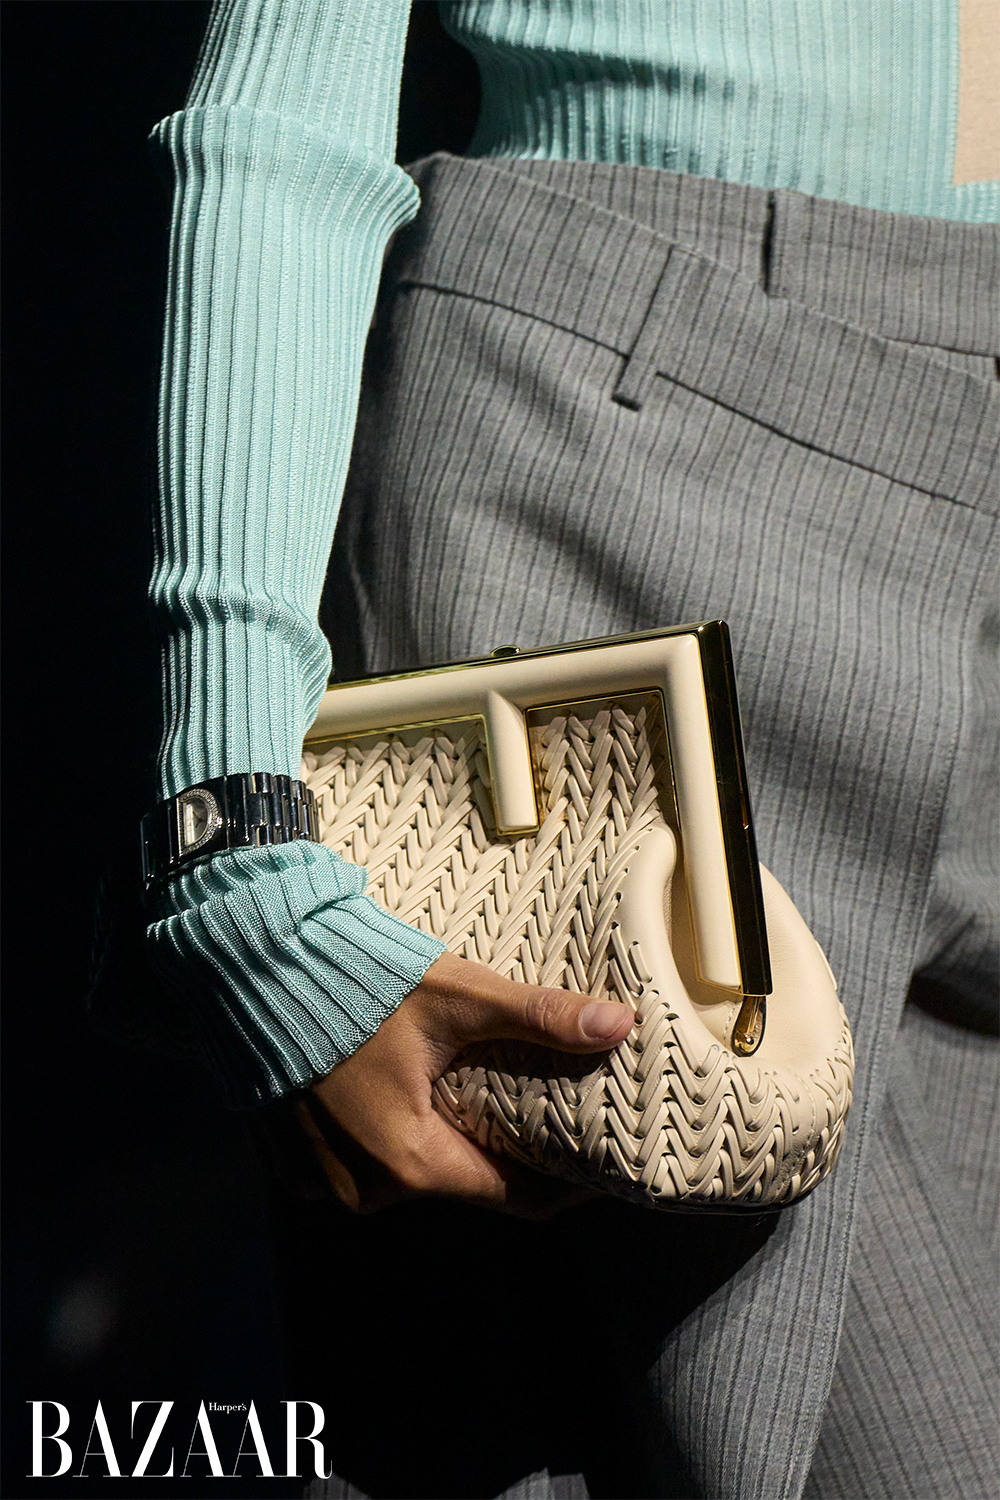 Thiết kế túi xách độc đáo, mang đậm phong cách Fendi